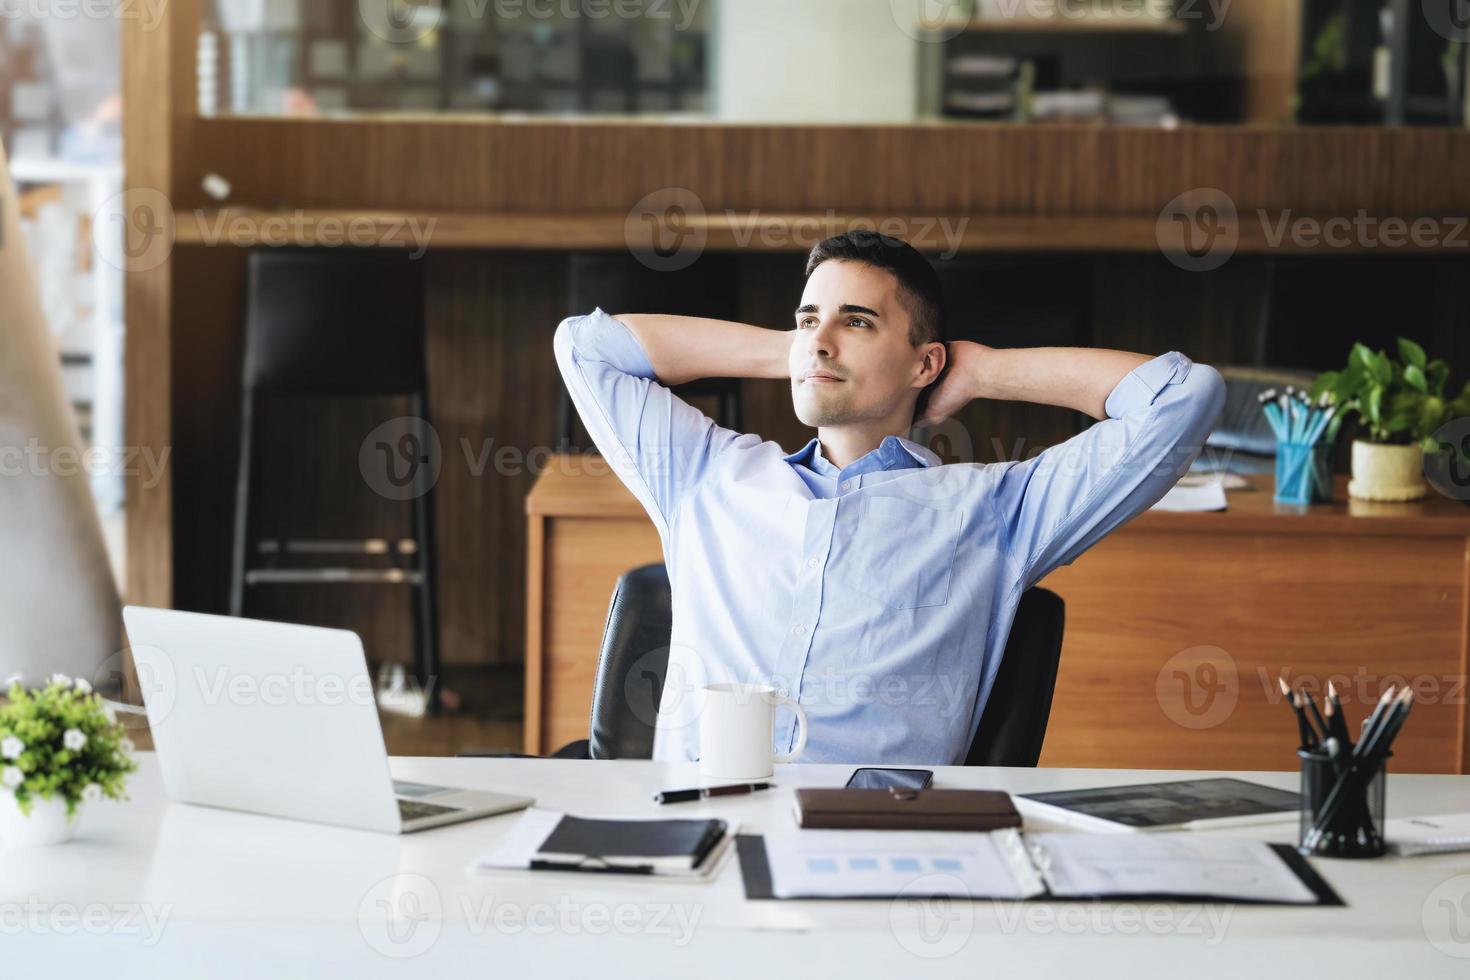 gerente de marketing masculino descansando e sorrindo enquanto trabalha para reduzir a sonolência antes de usar computadores, ipads e materiais de marketing. foto